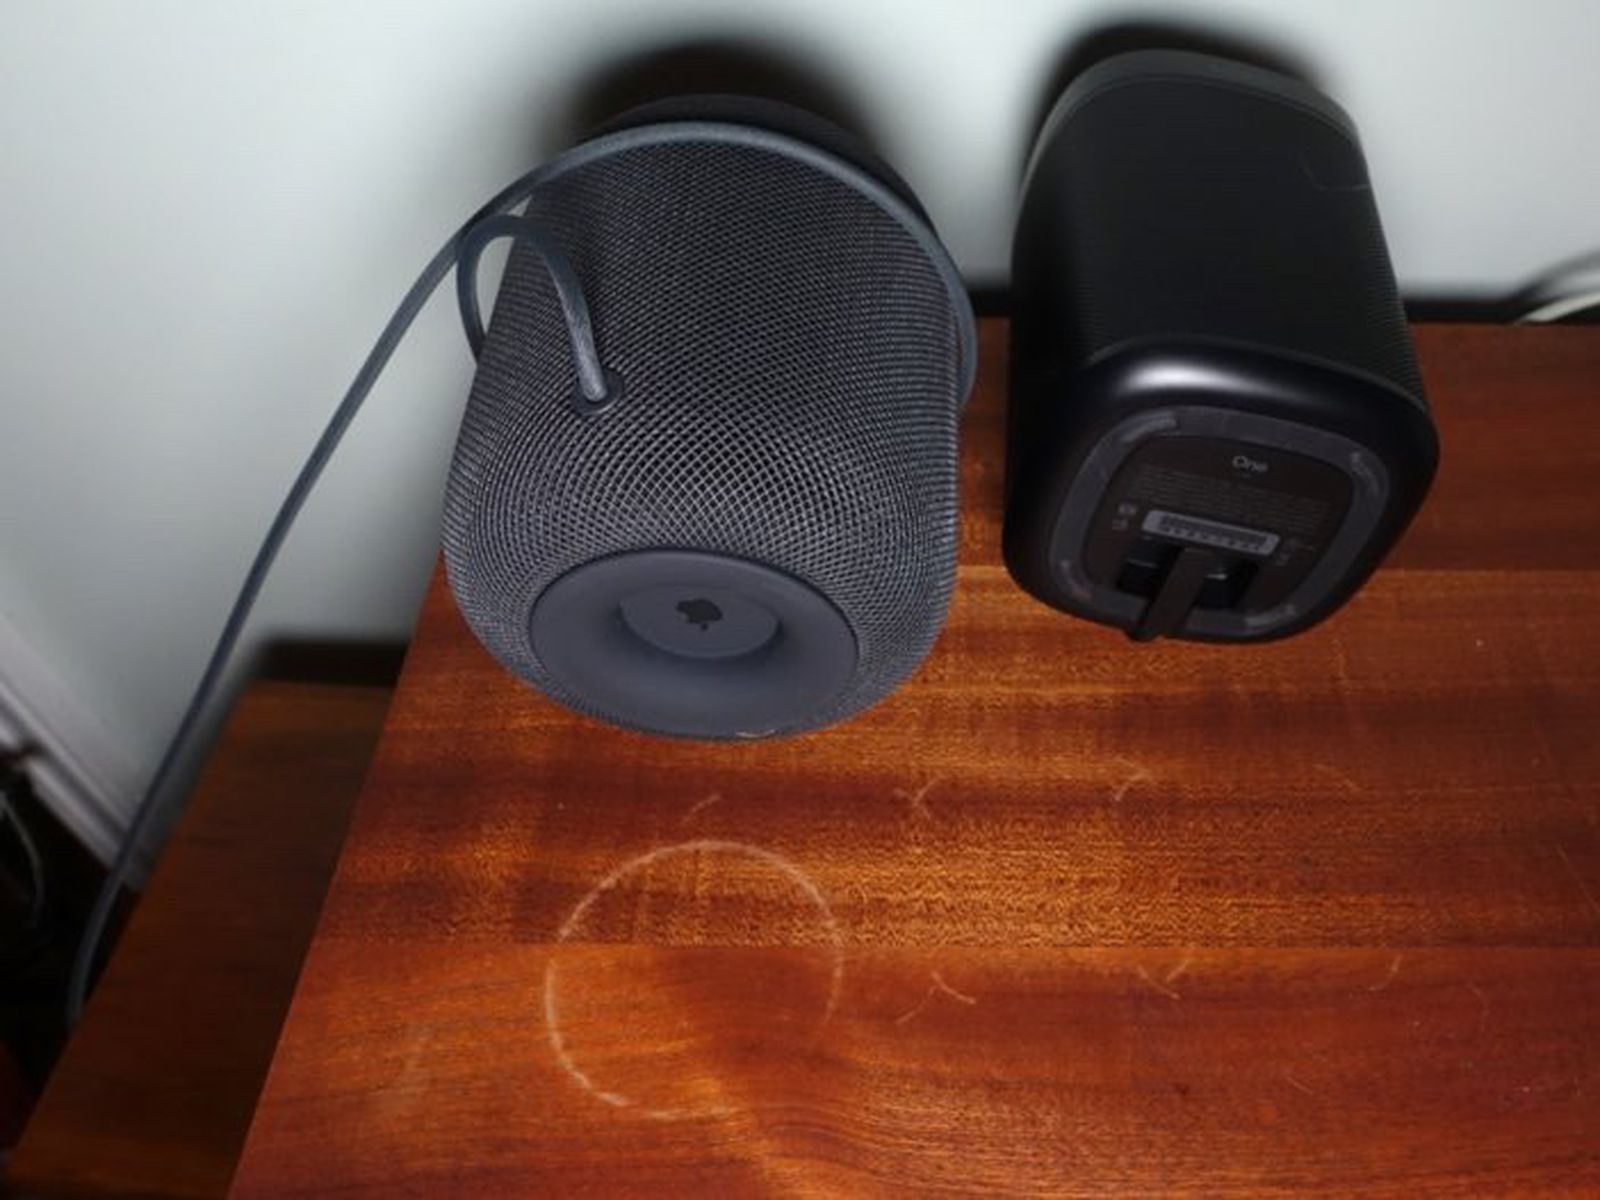 psykologi hensynsløs Skråstreg Like HomePod, Sonos One Leaves White Rings on Some Furniture - MacRumors